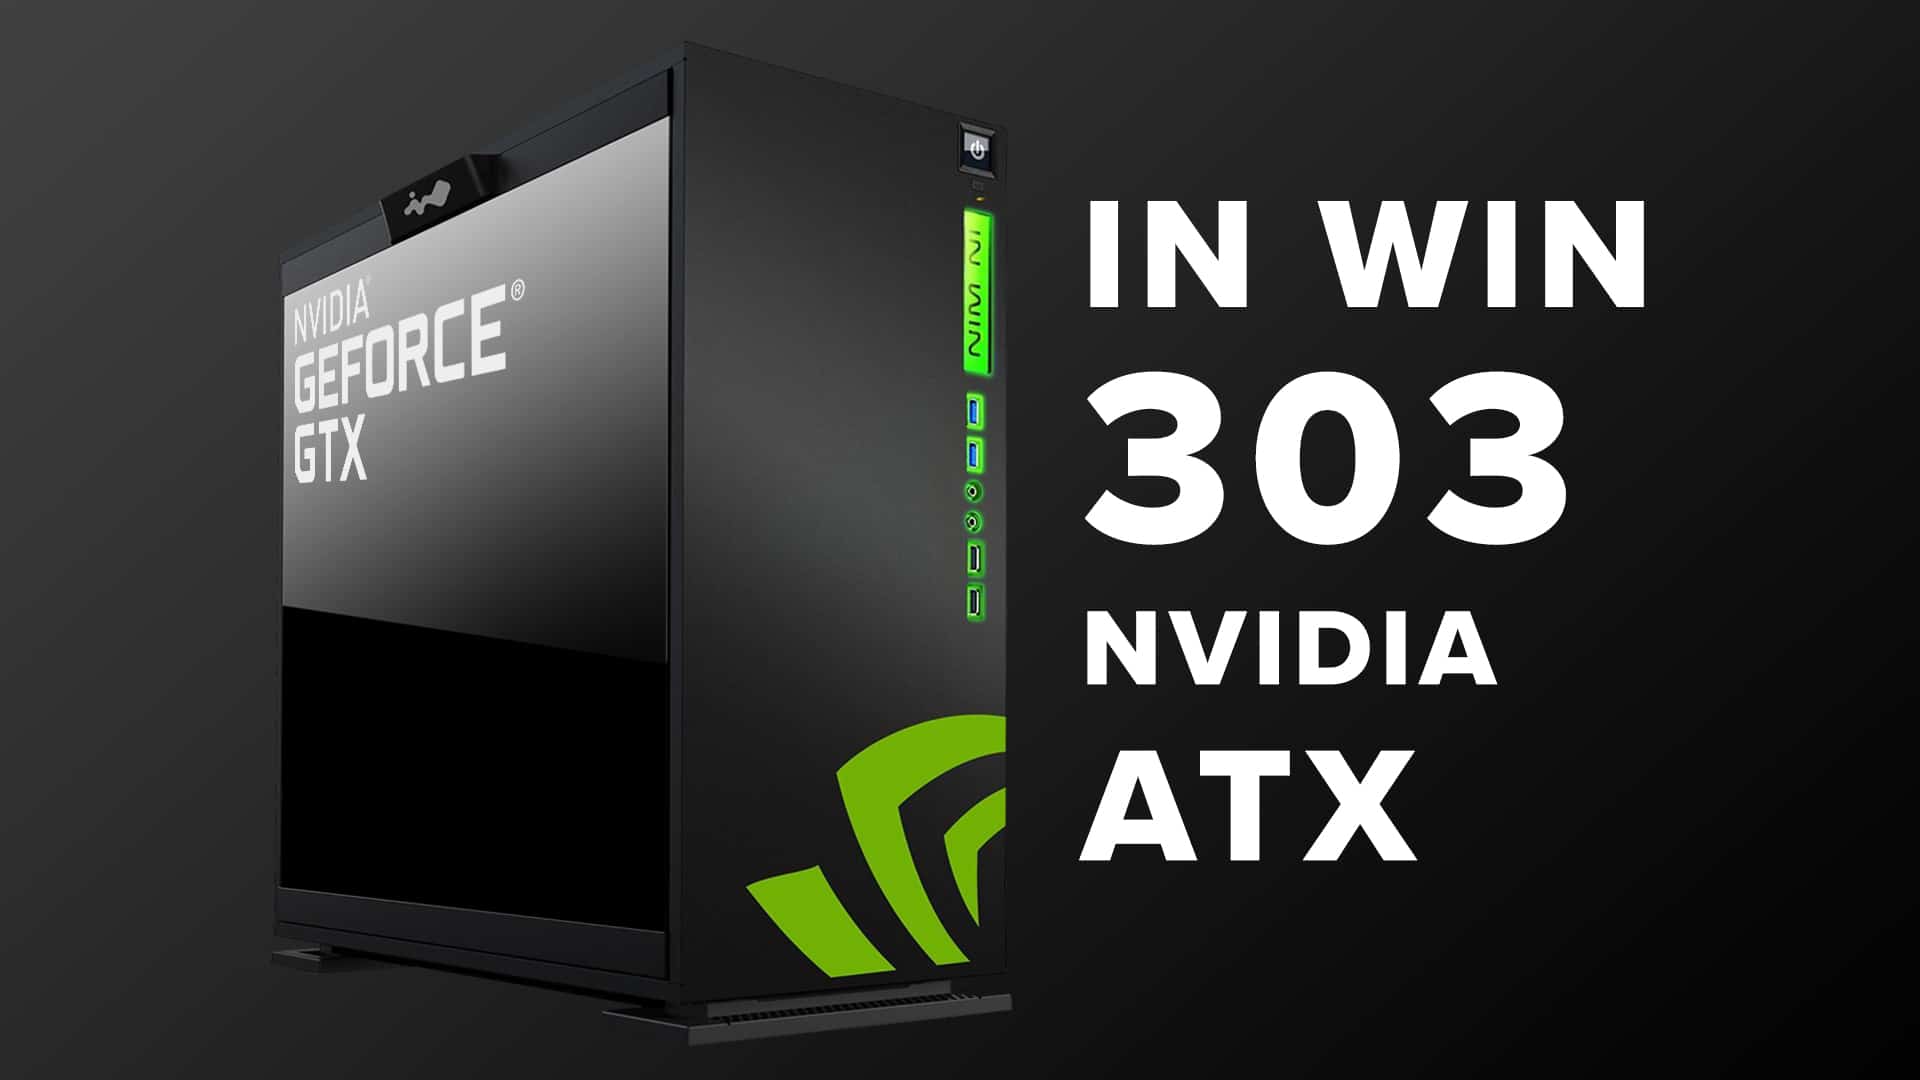 In Win 303 ATX - Nuovo Case con Serigrafie Nvidia